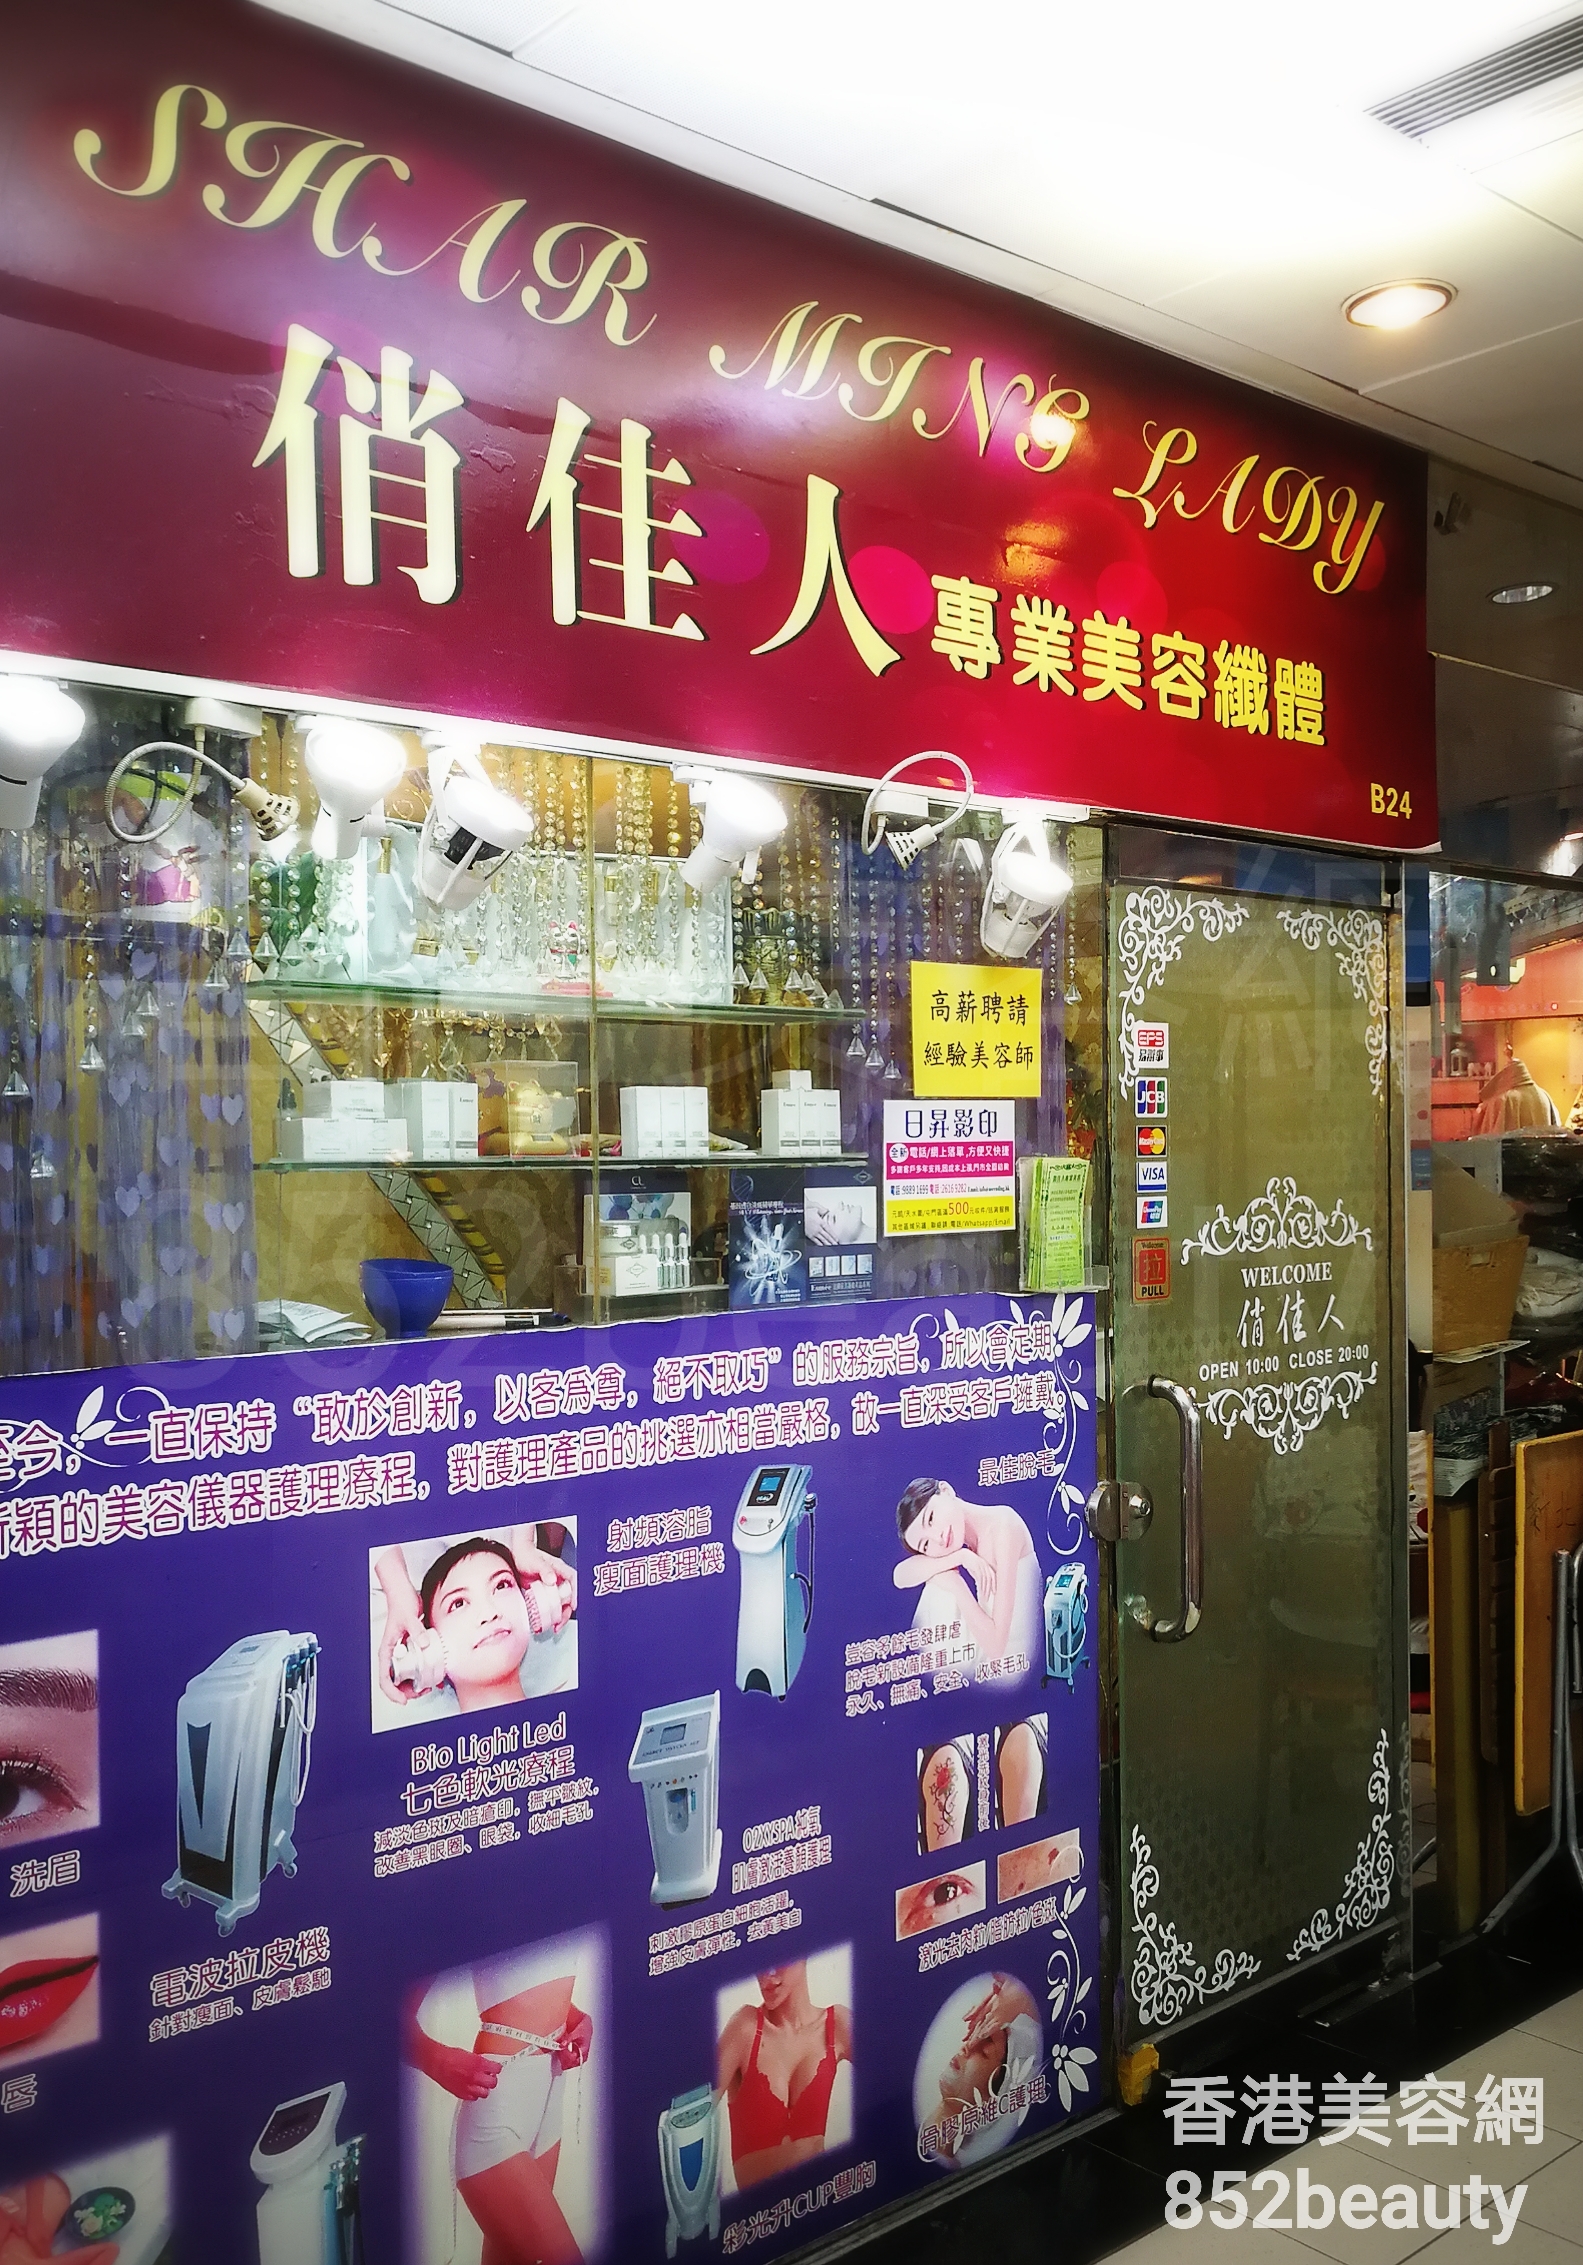 香港美容網 Hong Kong Beauty Salon 美容院 / 美容師: 俏佳人 專業美容